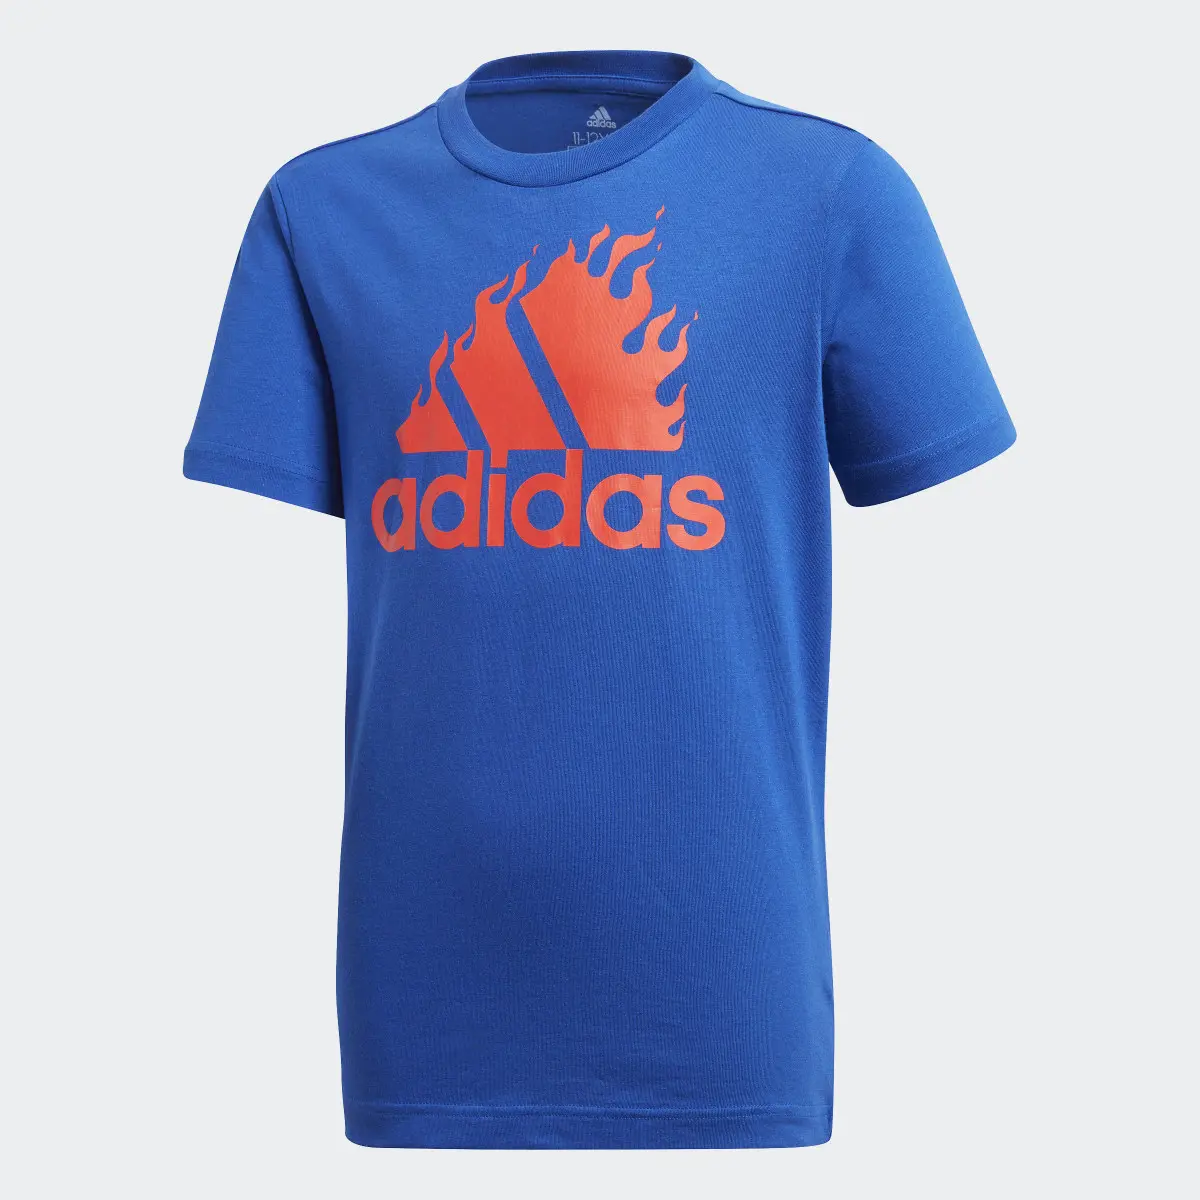 Adidas Graphic Tişört. 1